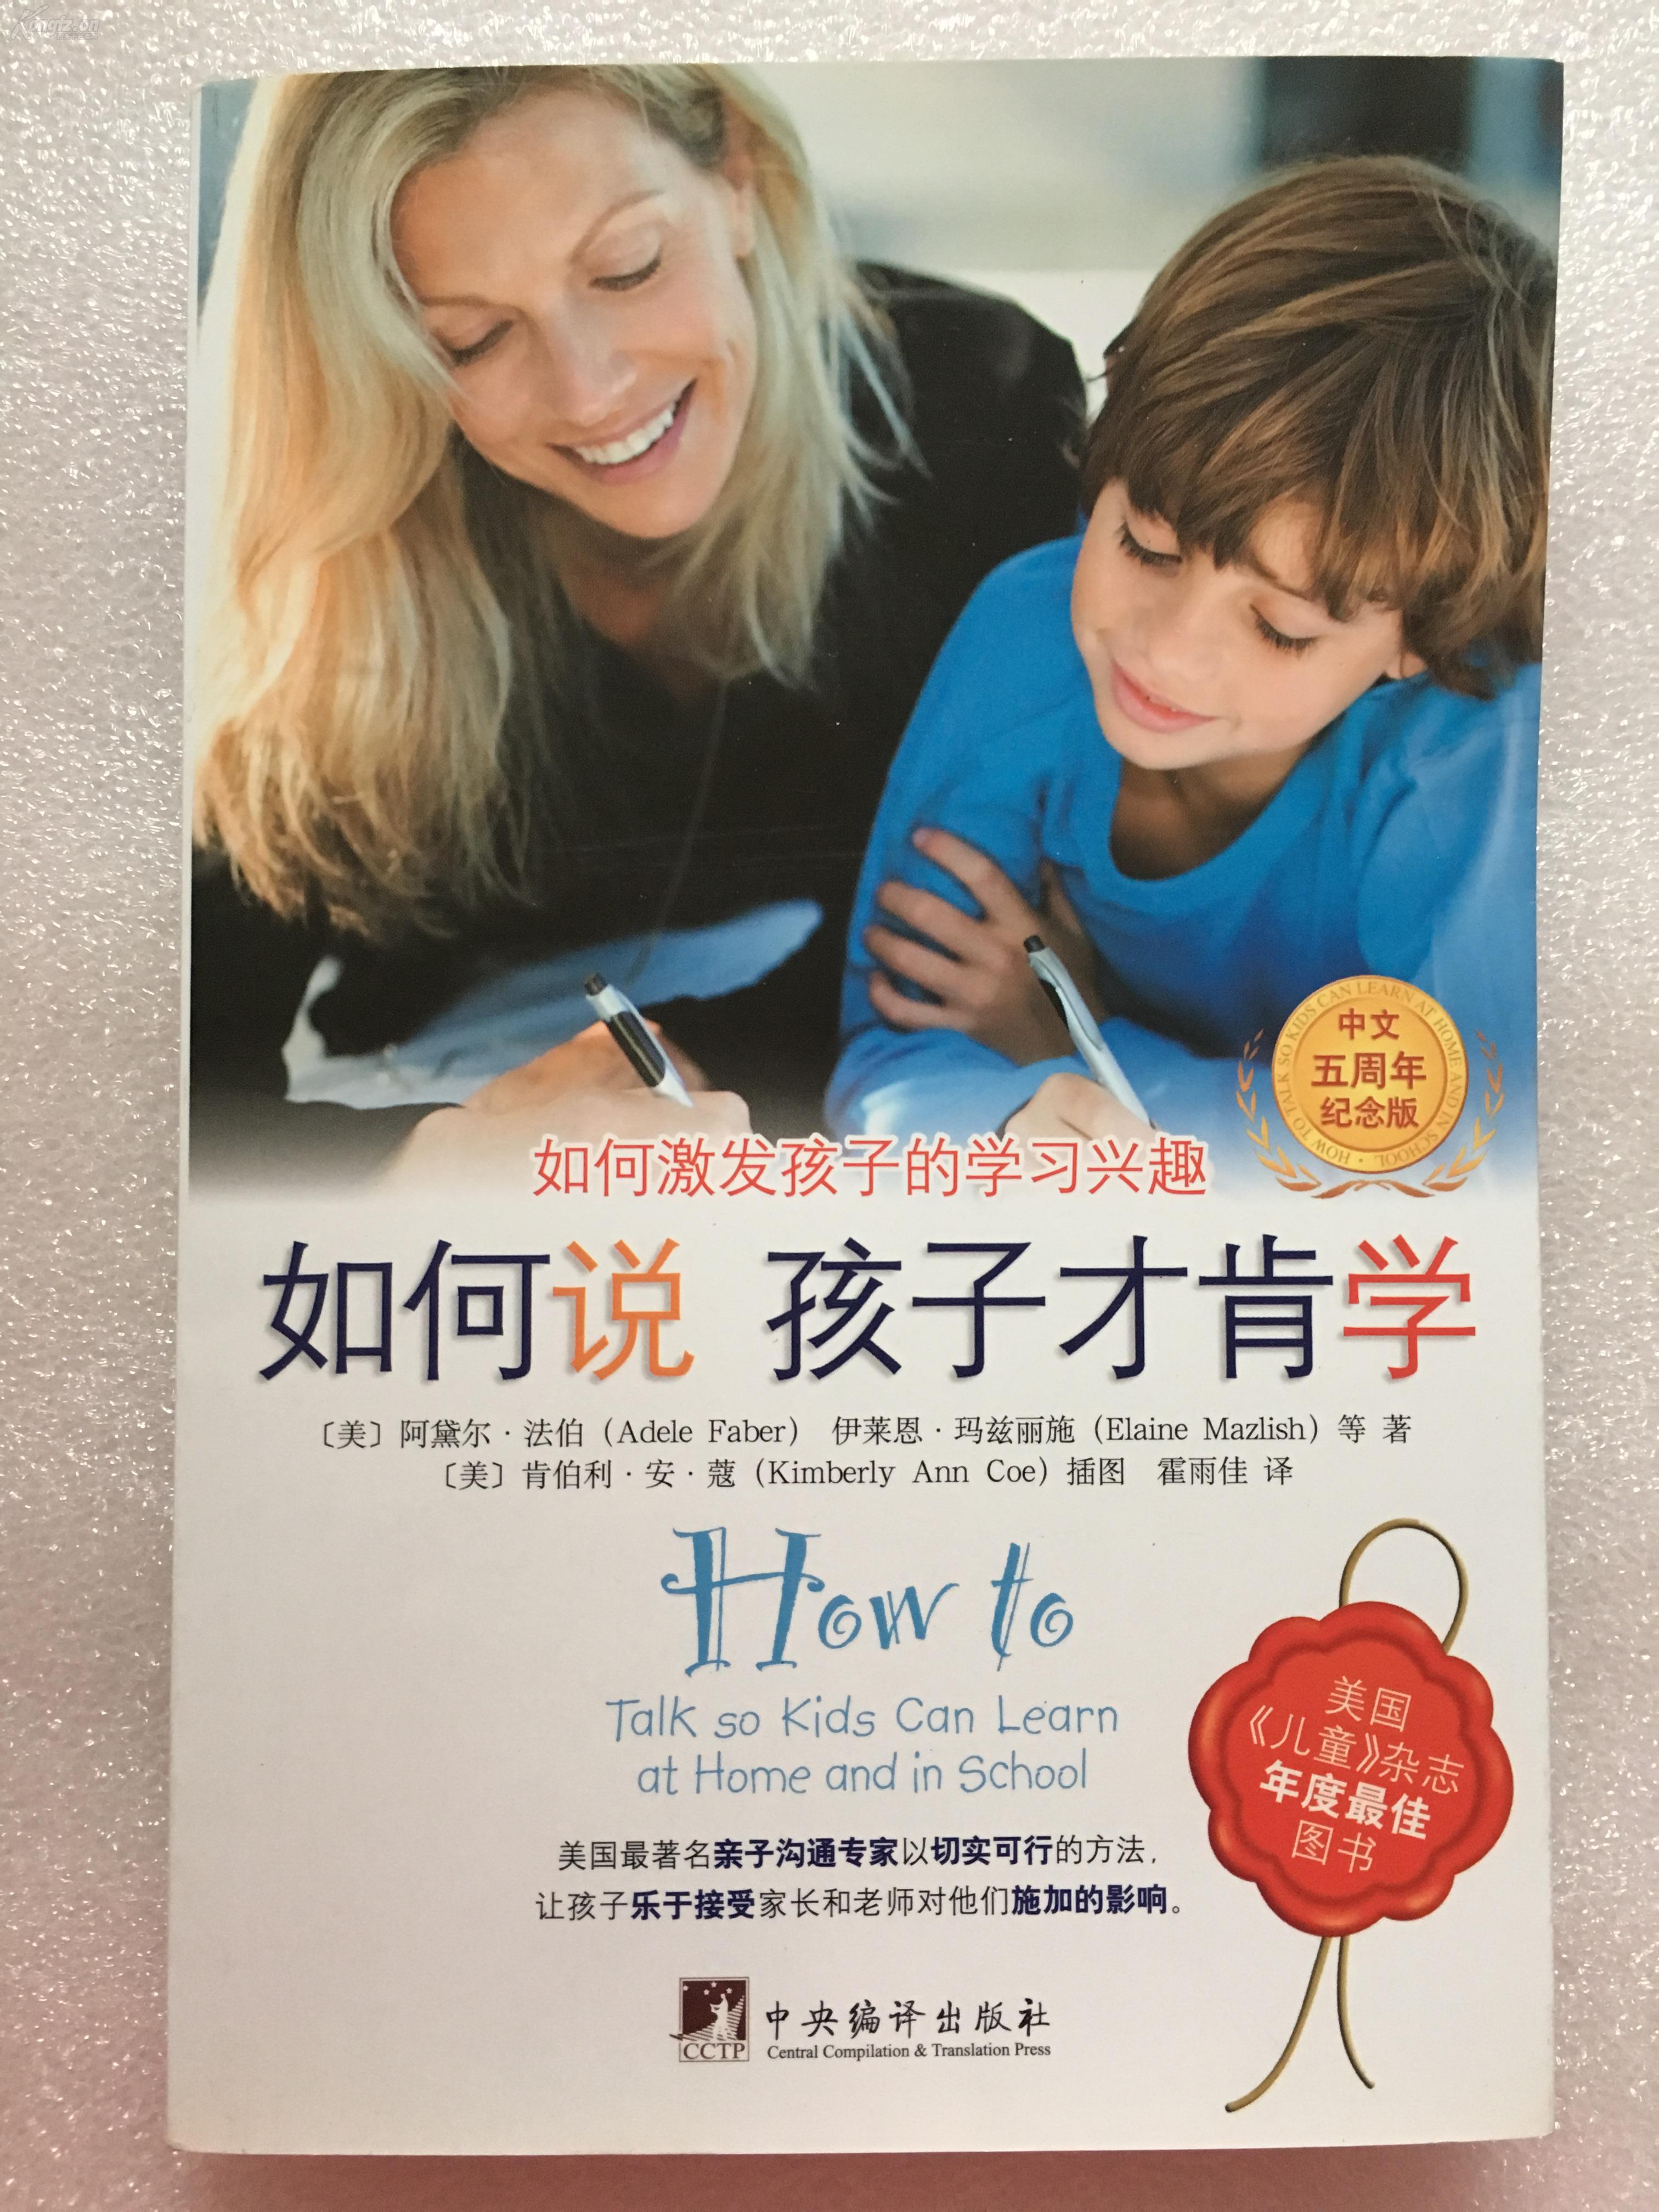 法伯 中央编译出版社(美国《儿童》杂志年度畅销图书,中文五周年纪念